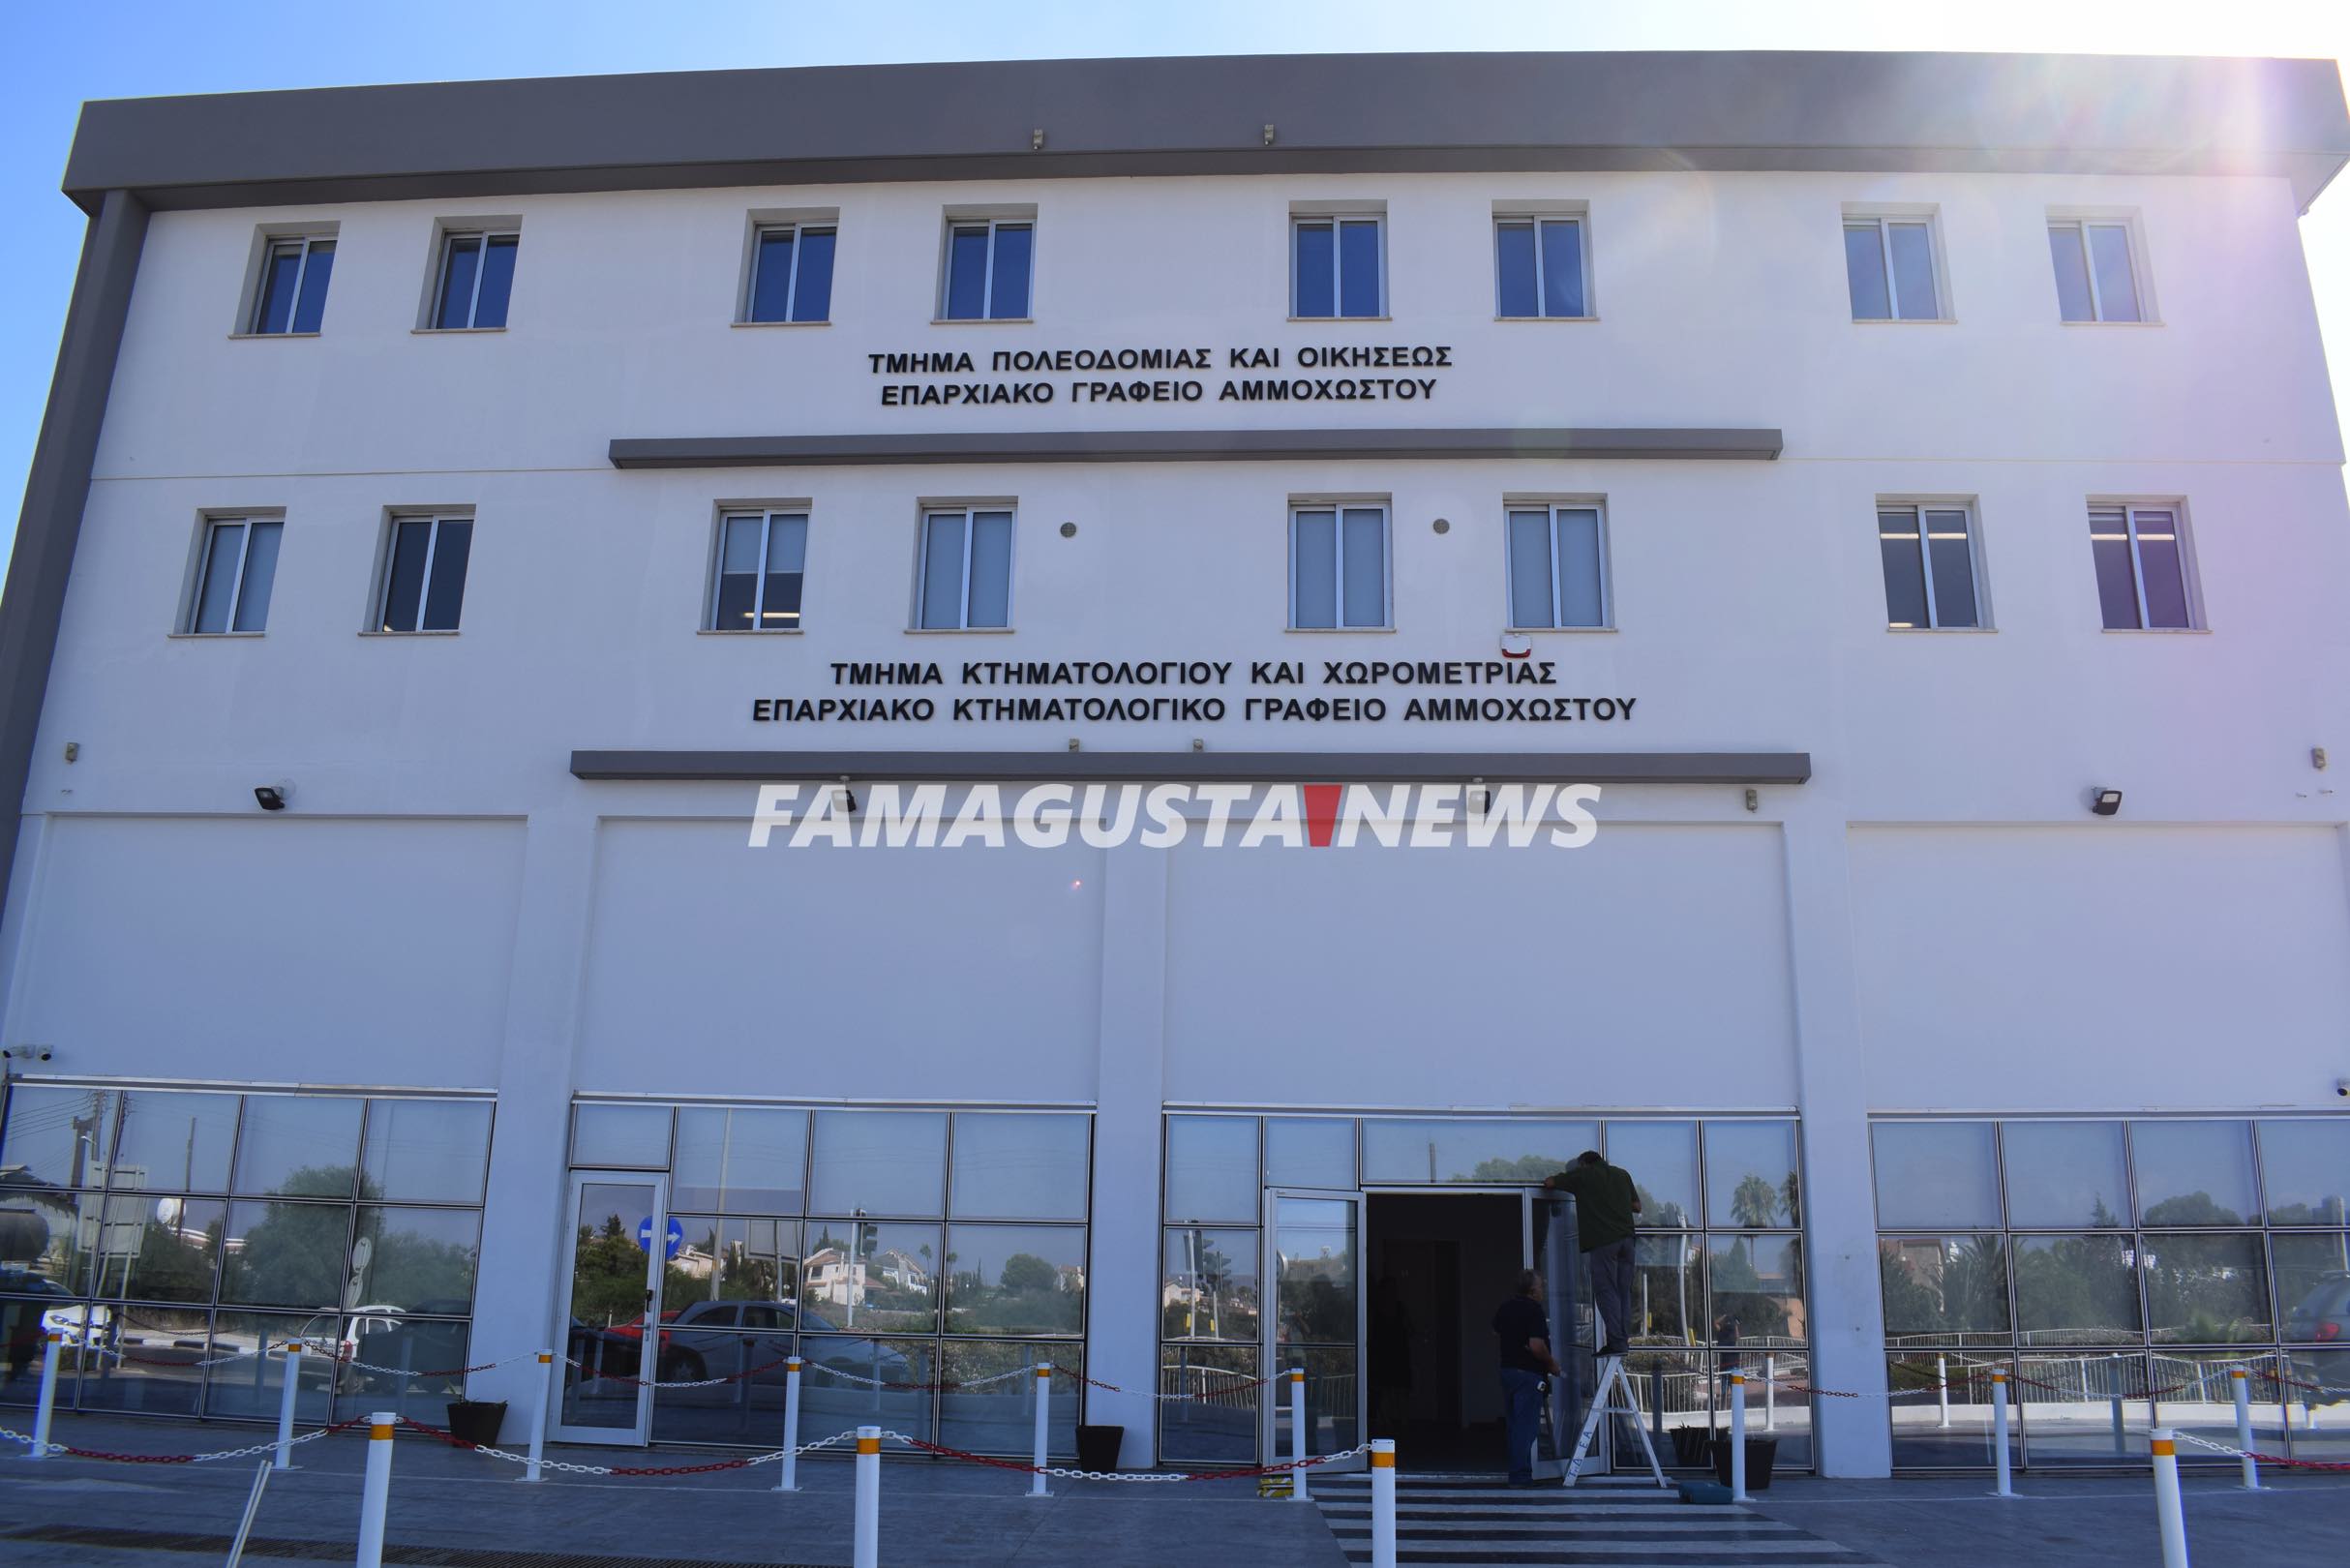 DSC 1792 Land Registry of Famagusta